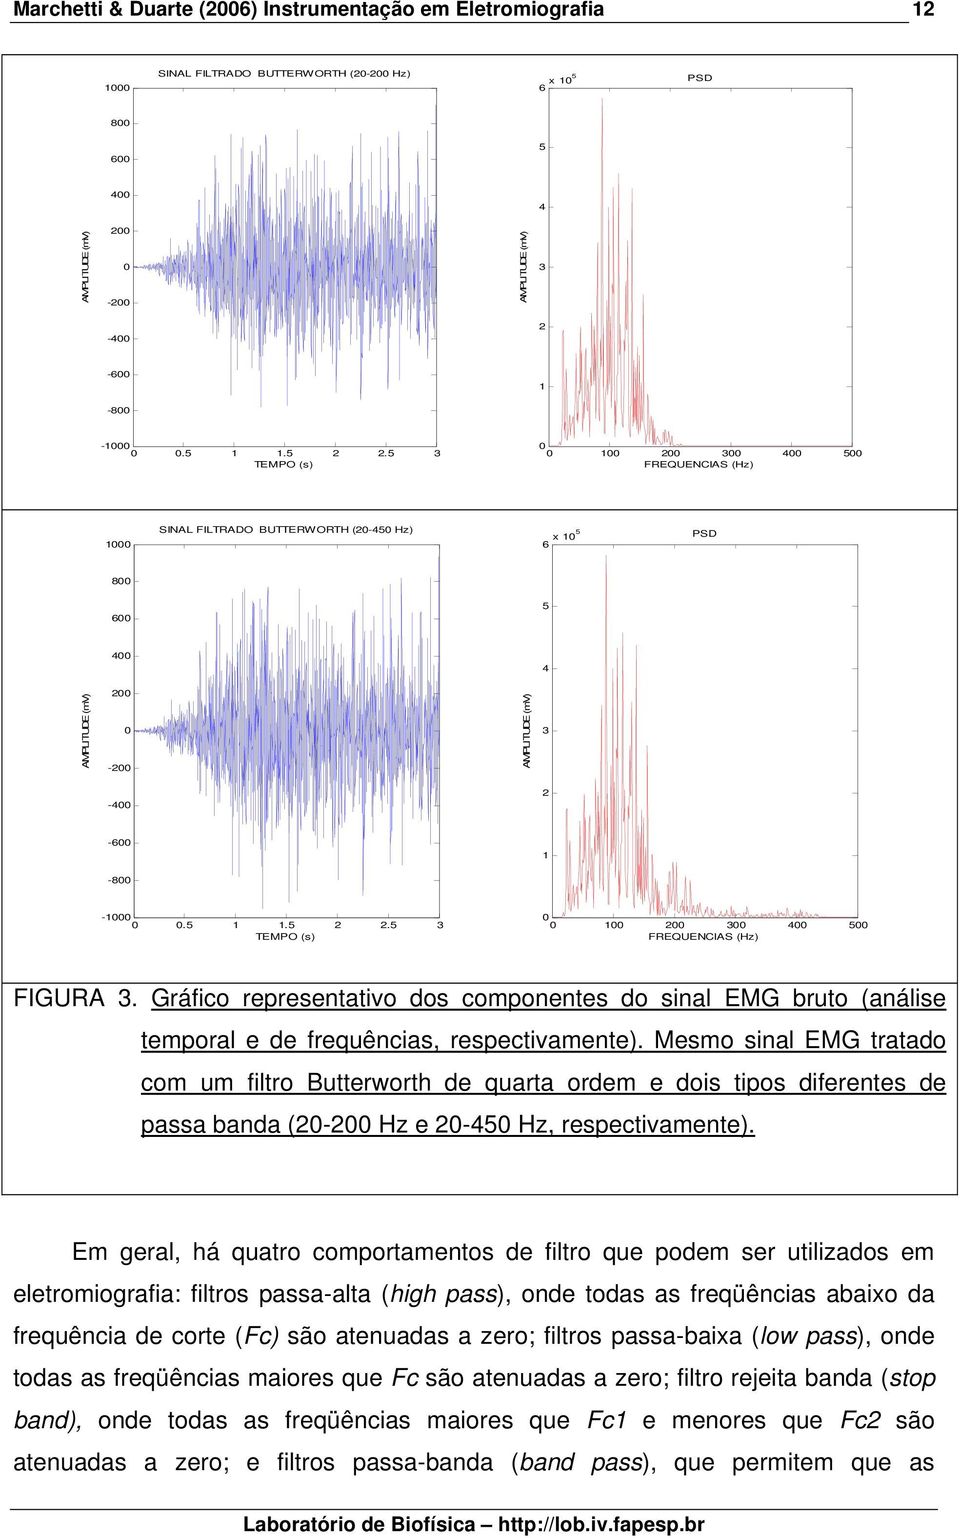 Gráfico representativo dos componentes do sinal EMG bruto (análise temporal e de frequências, respectivamente).